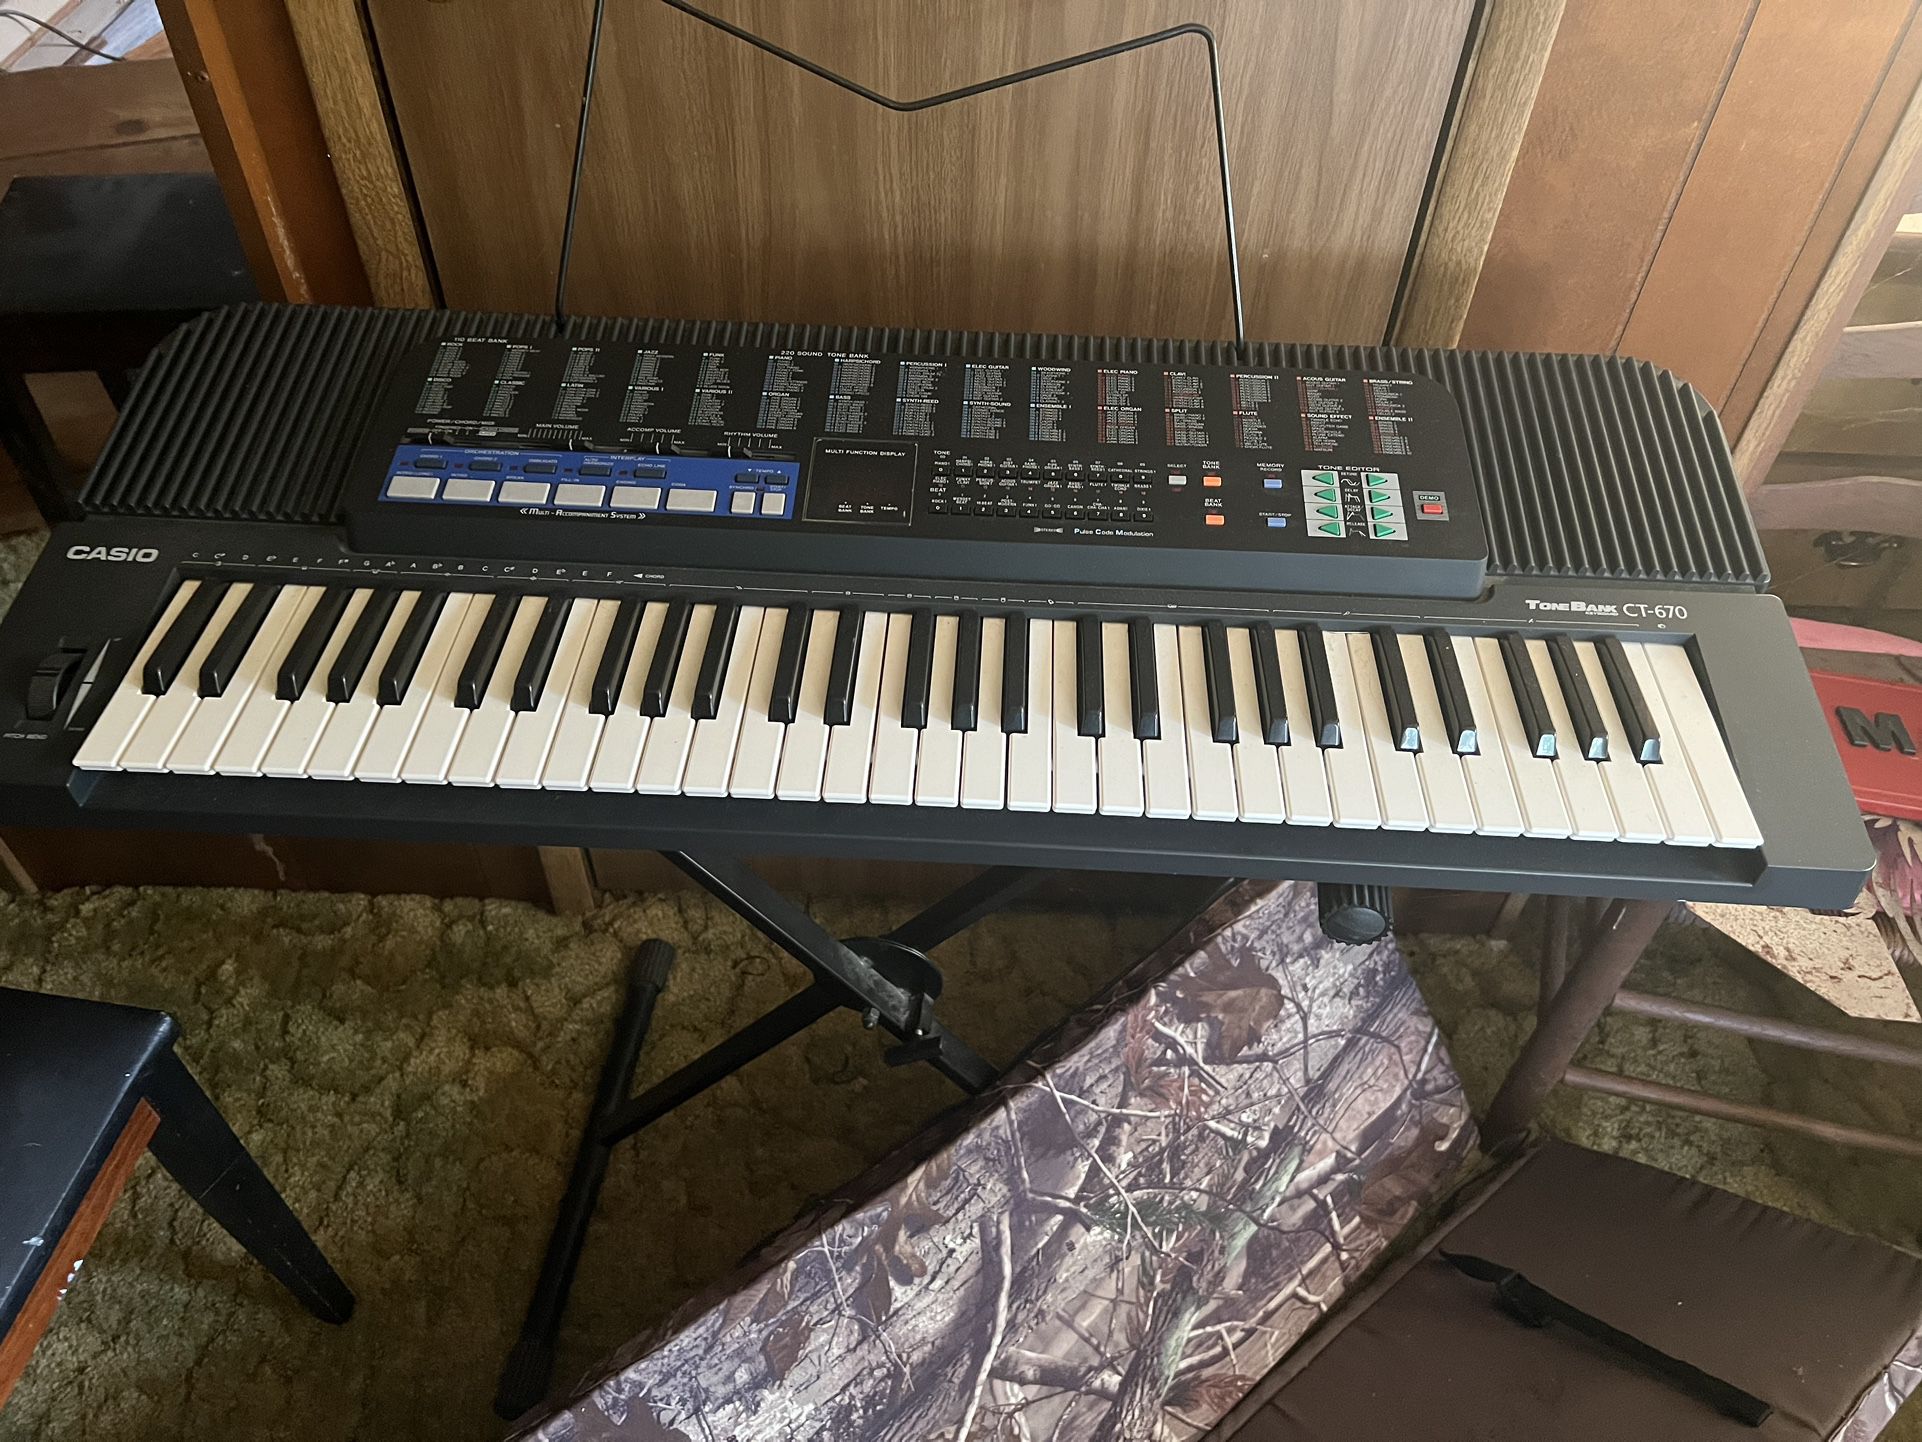 Casio CT 670 Keyboard